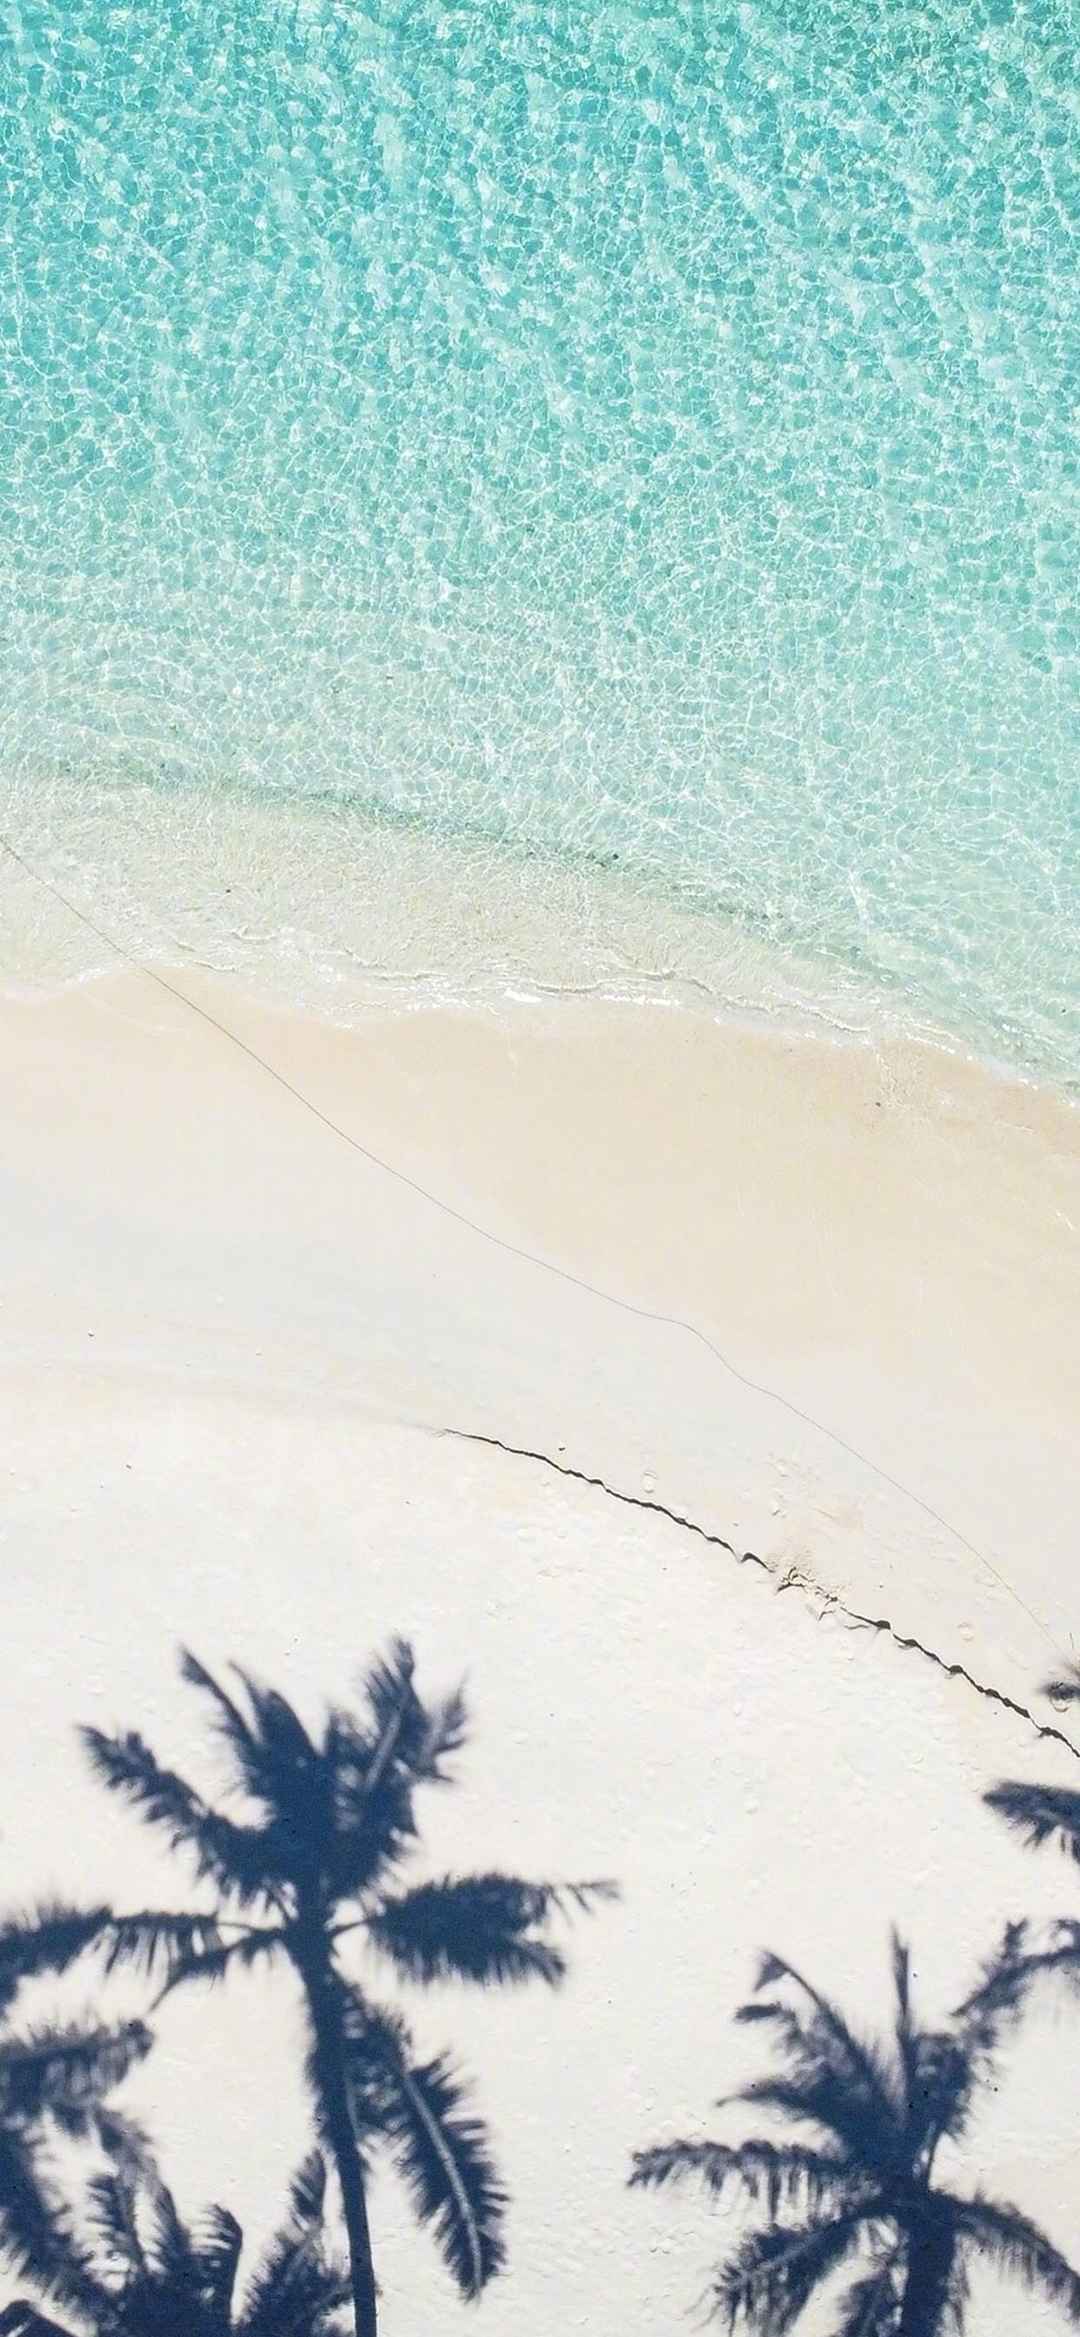 大海沙滩自然风景手机壁纸